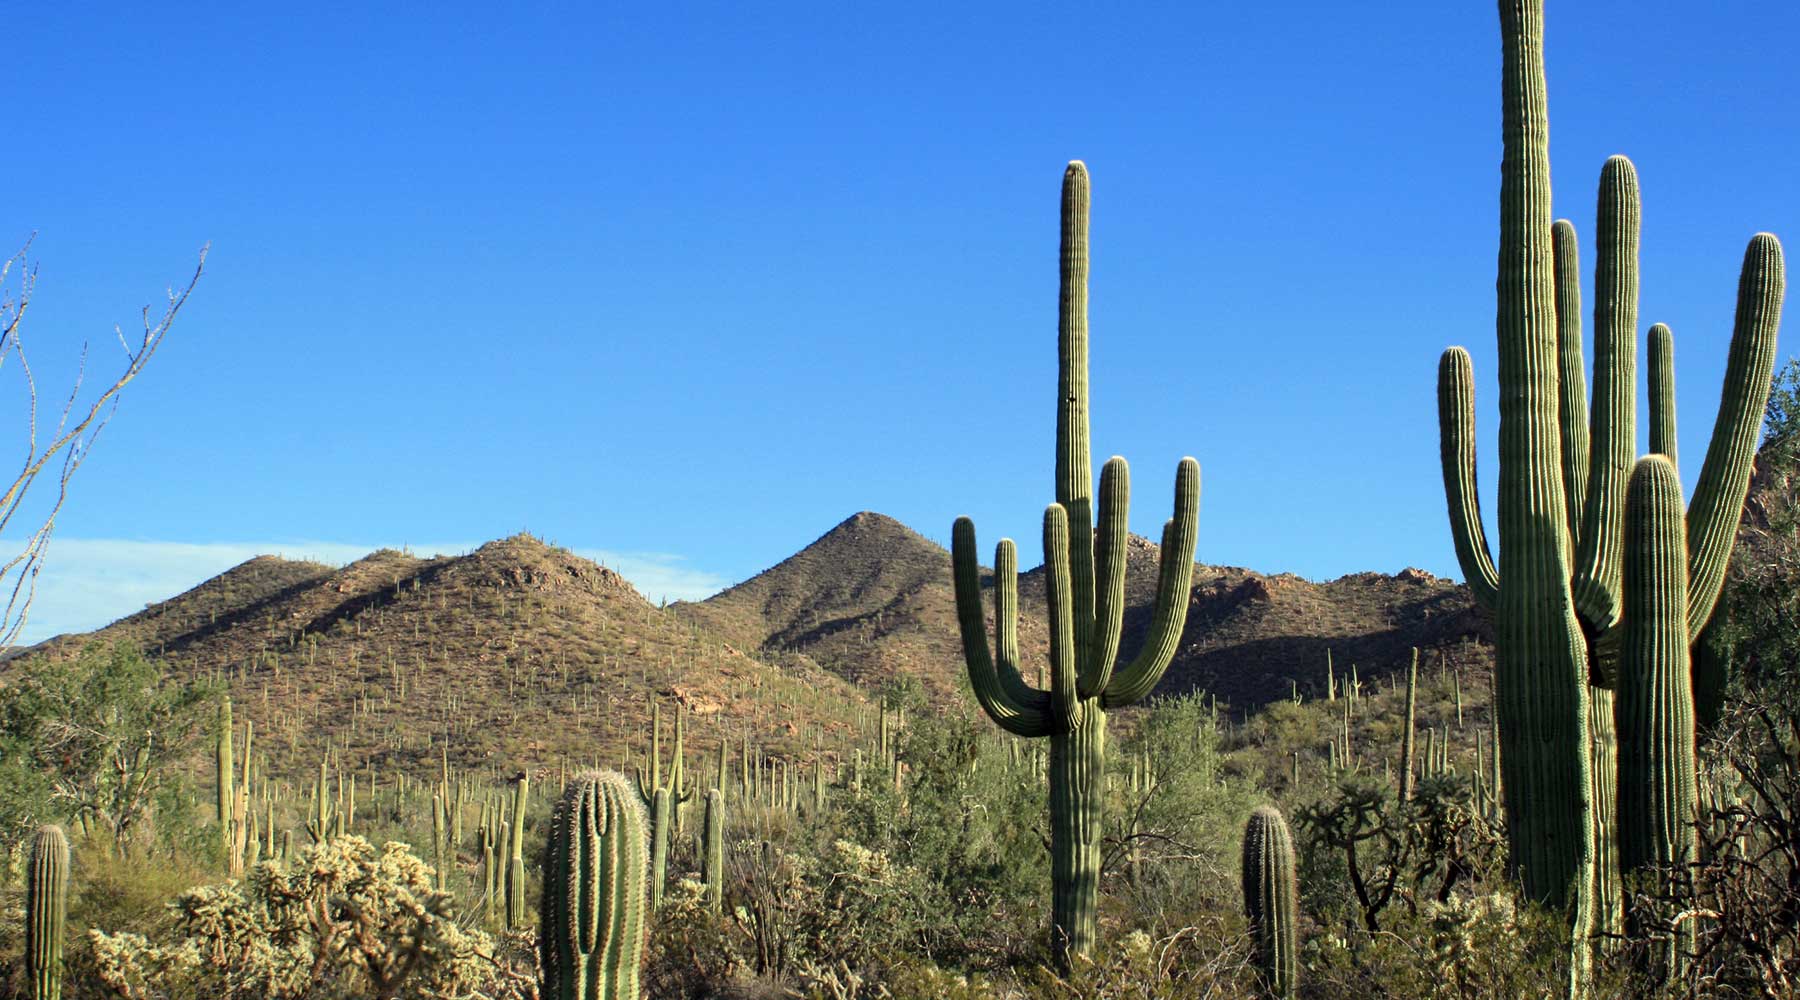 saguaro, Joshua tree, chinook voyages, aventure, randonnée, trek, déserts, ouest américain, death valley en randonnée